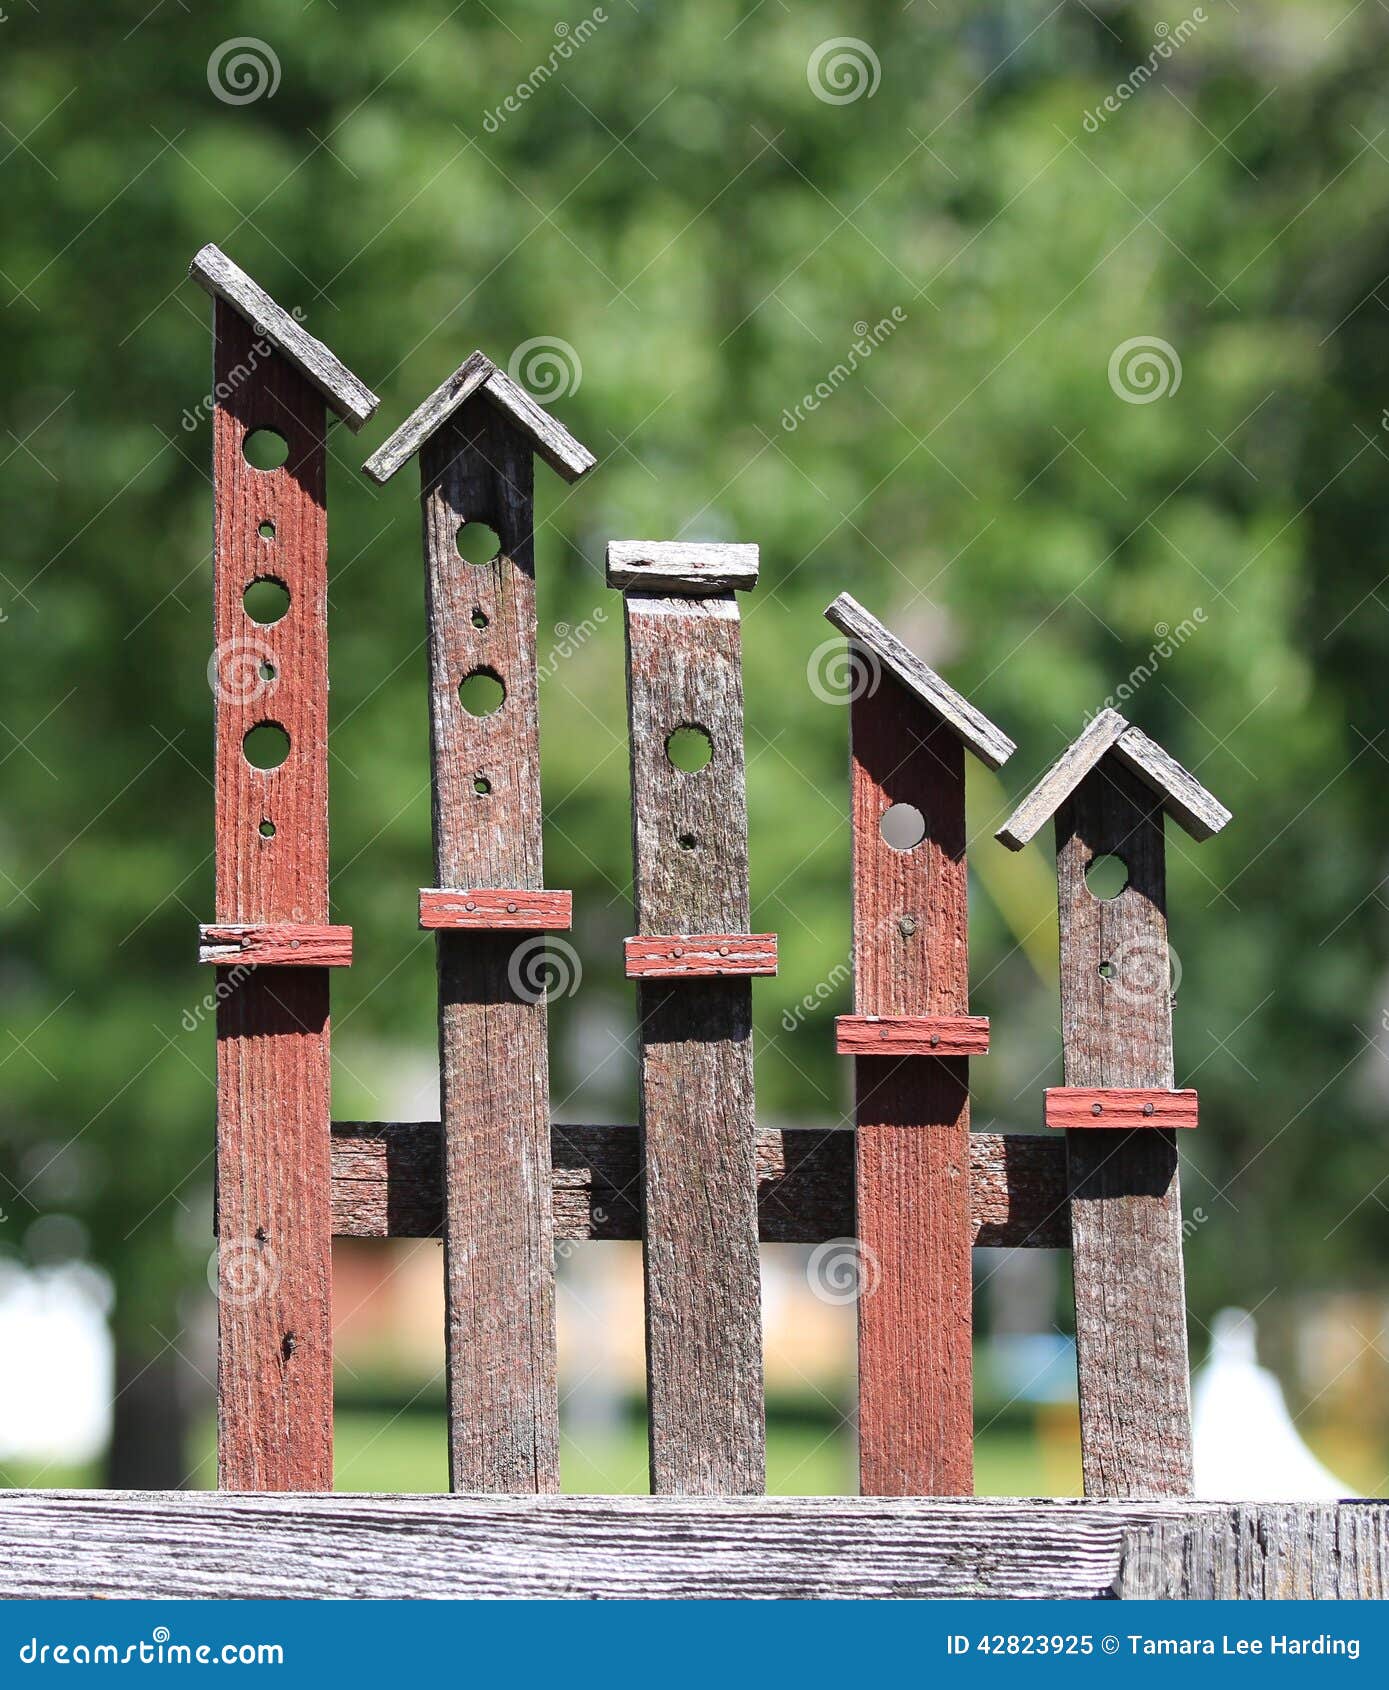 Americana Wooden Yard Art Birdhouses Stock Image - Image 